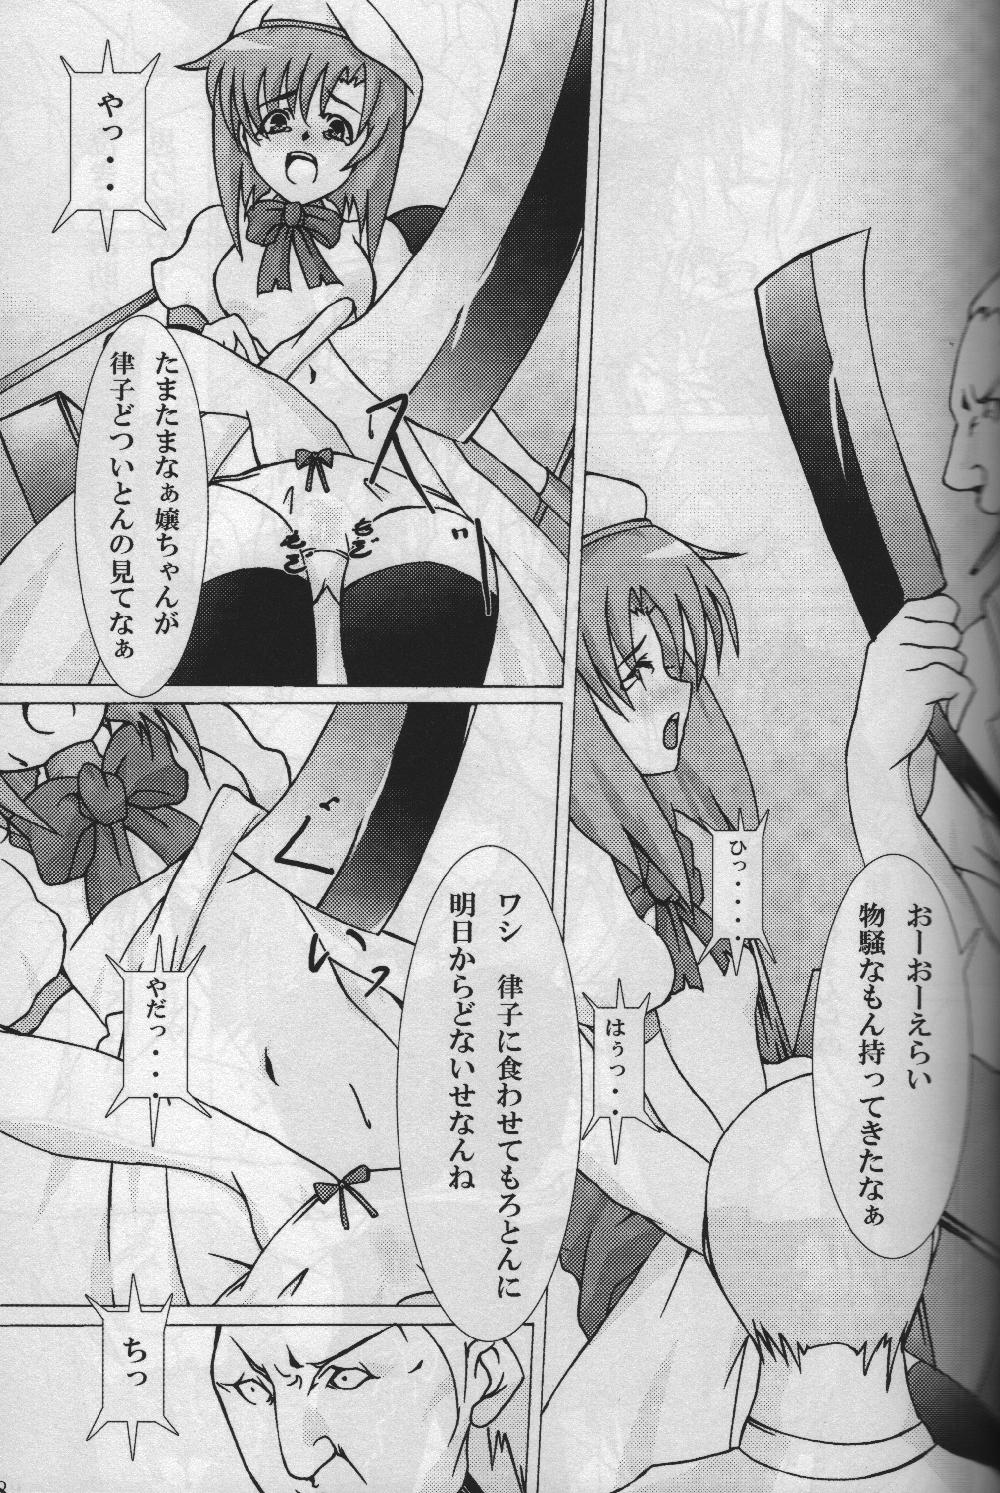 Monstercock Higeki wa Mabuta wo Tojite - Higurashi no naku koro ni India - Page 9